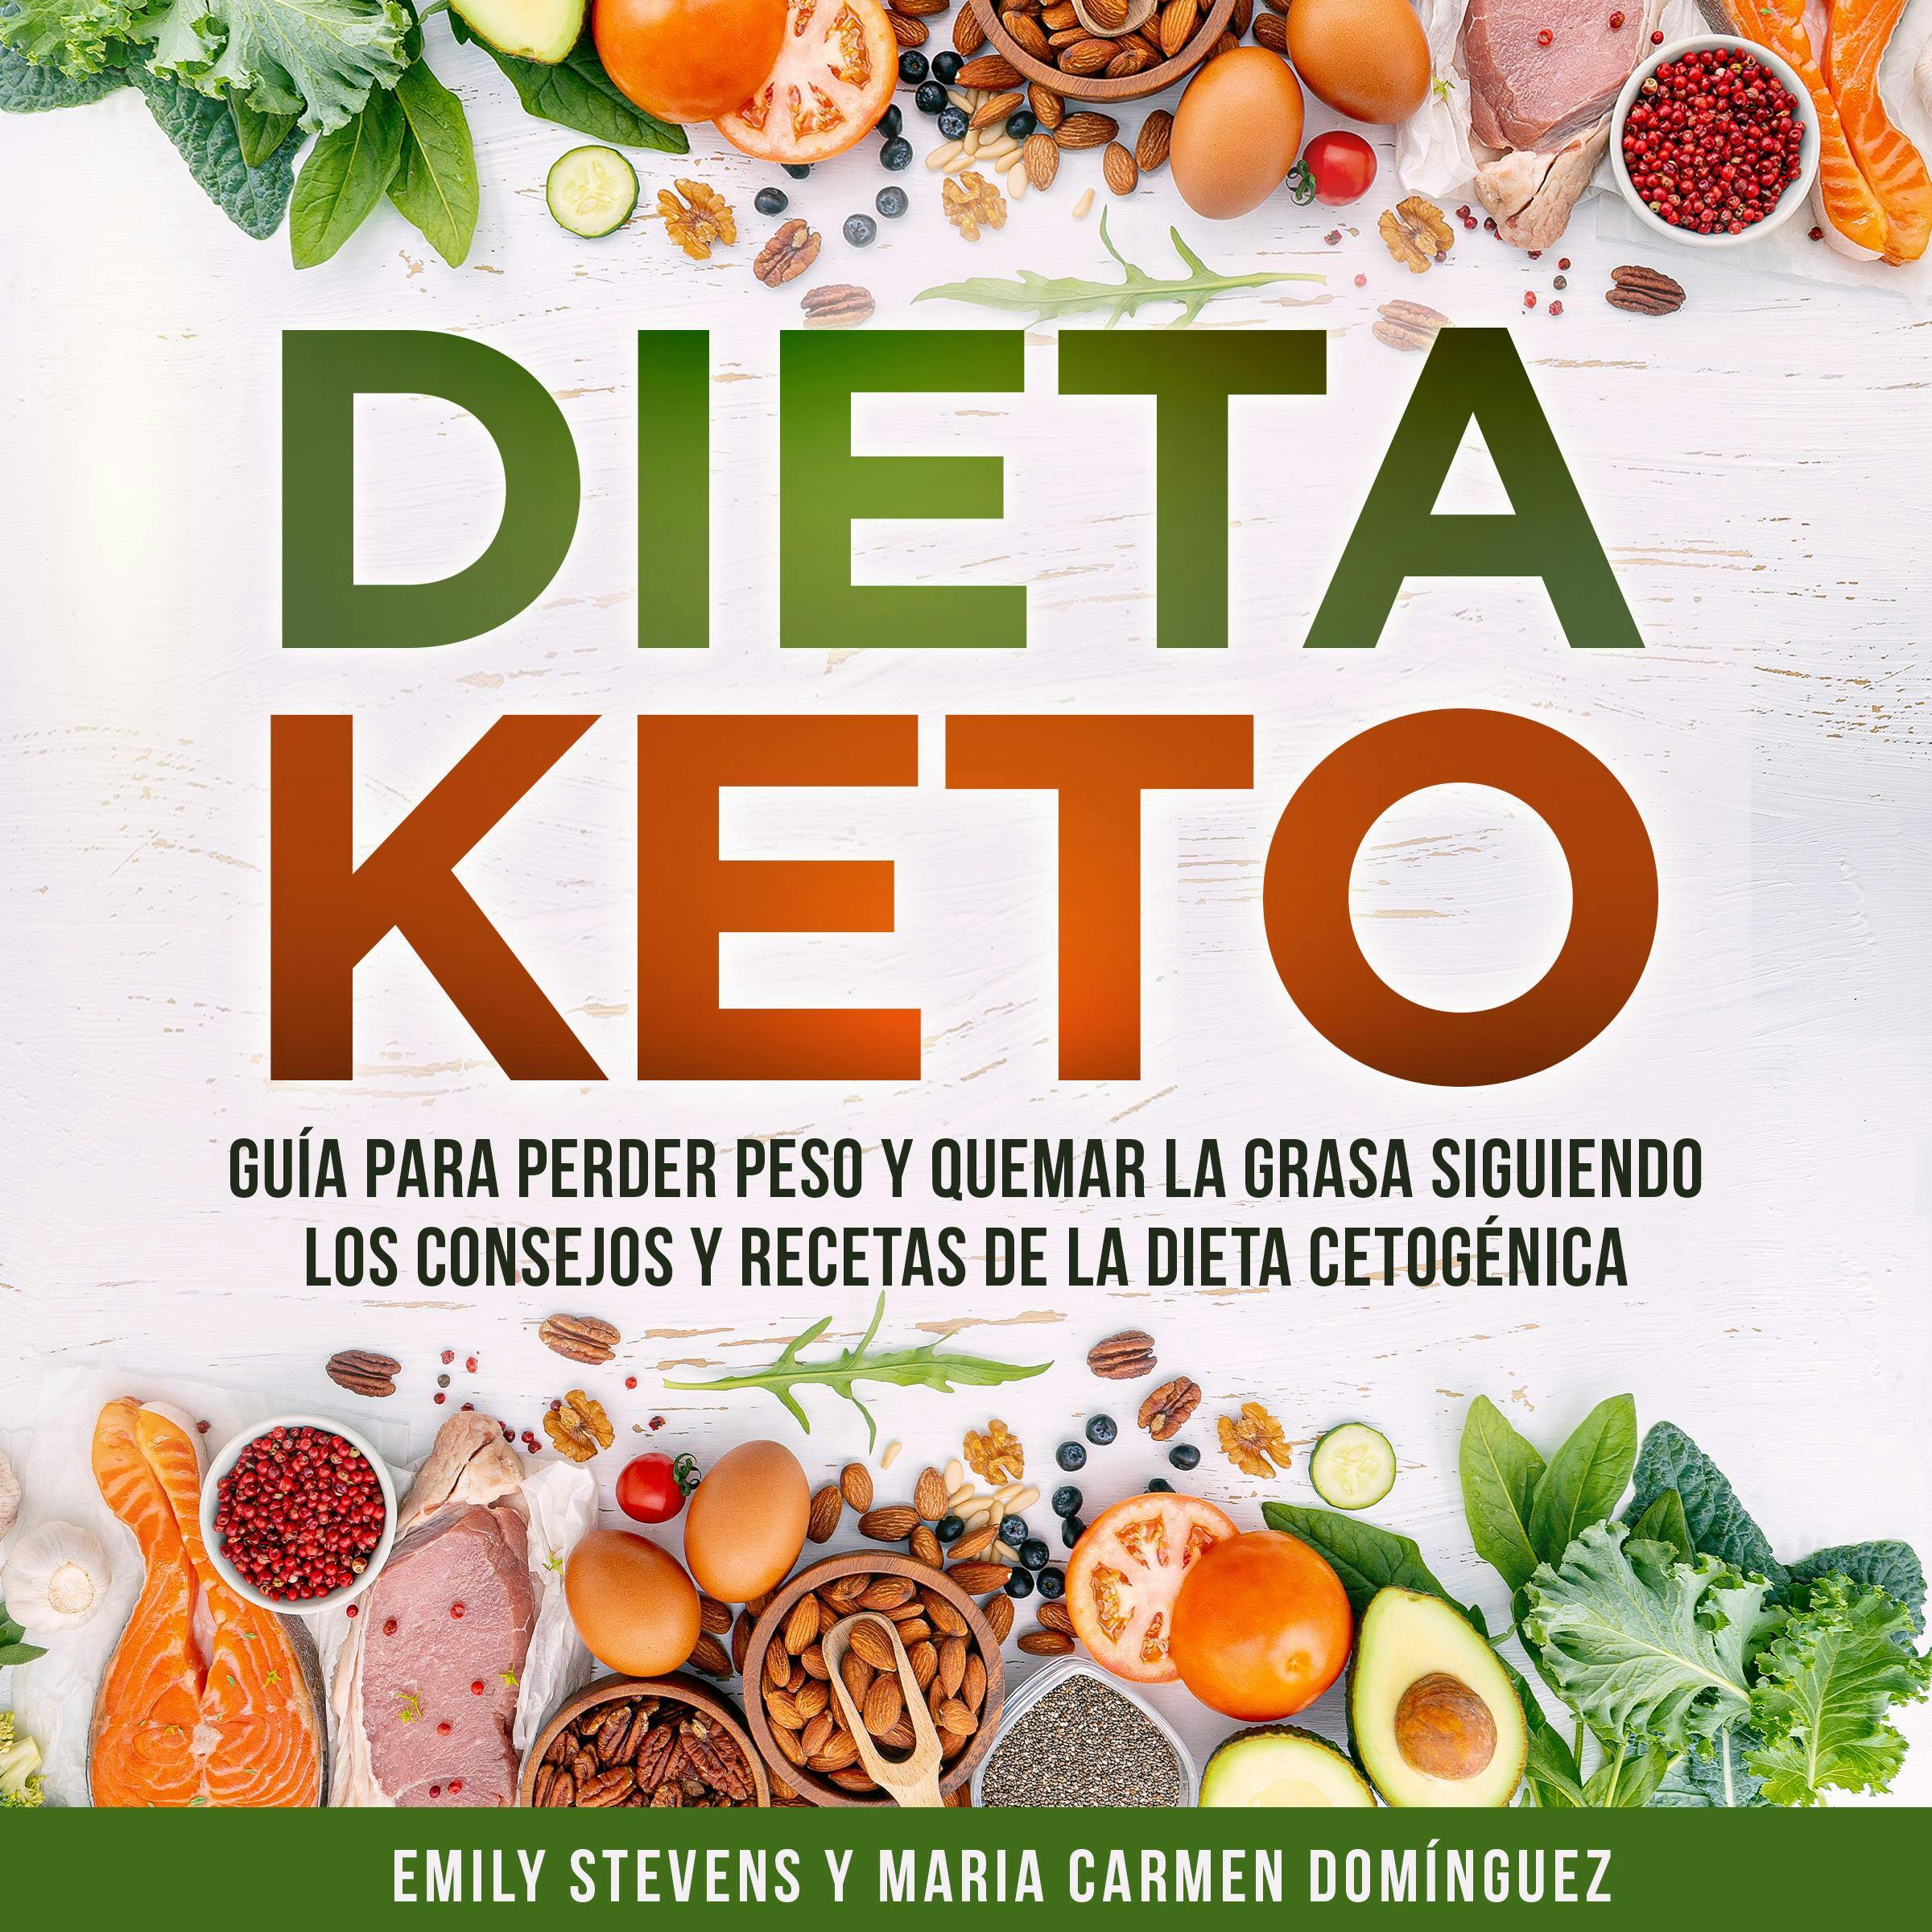 Dieta Keto: Guía para perder peso y quemar la grasa siguiendo los consejos y recetas de la dieta cetogénica. - Emily Stevens, Maria Carmen Domínguez